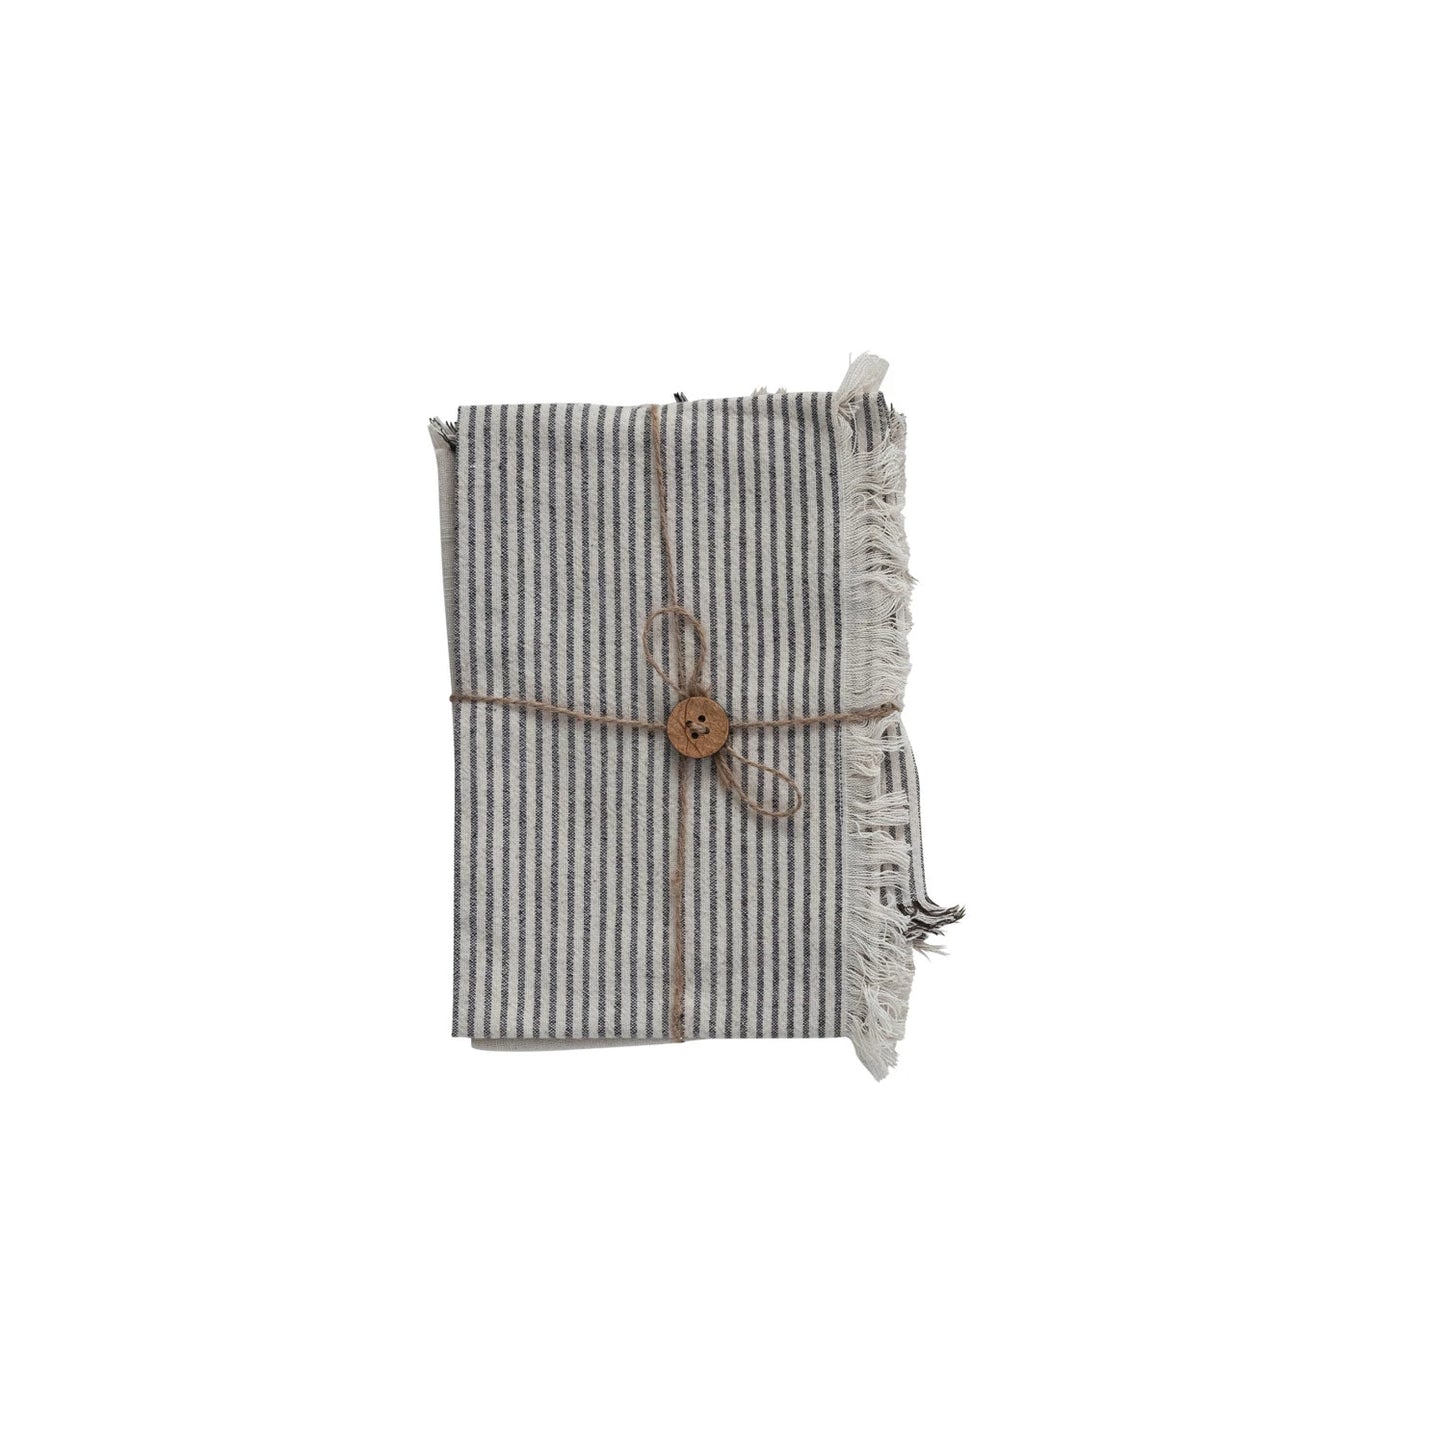 Cotton Tea Towels - Stripes + Fringe - Set of 2